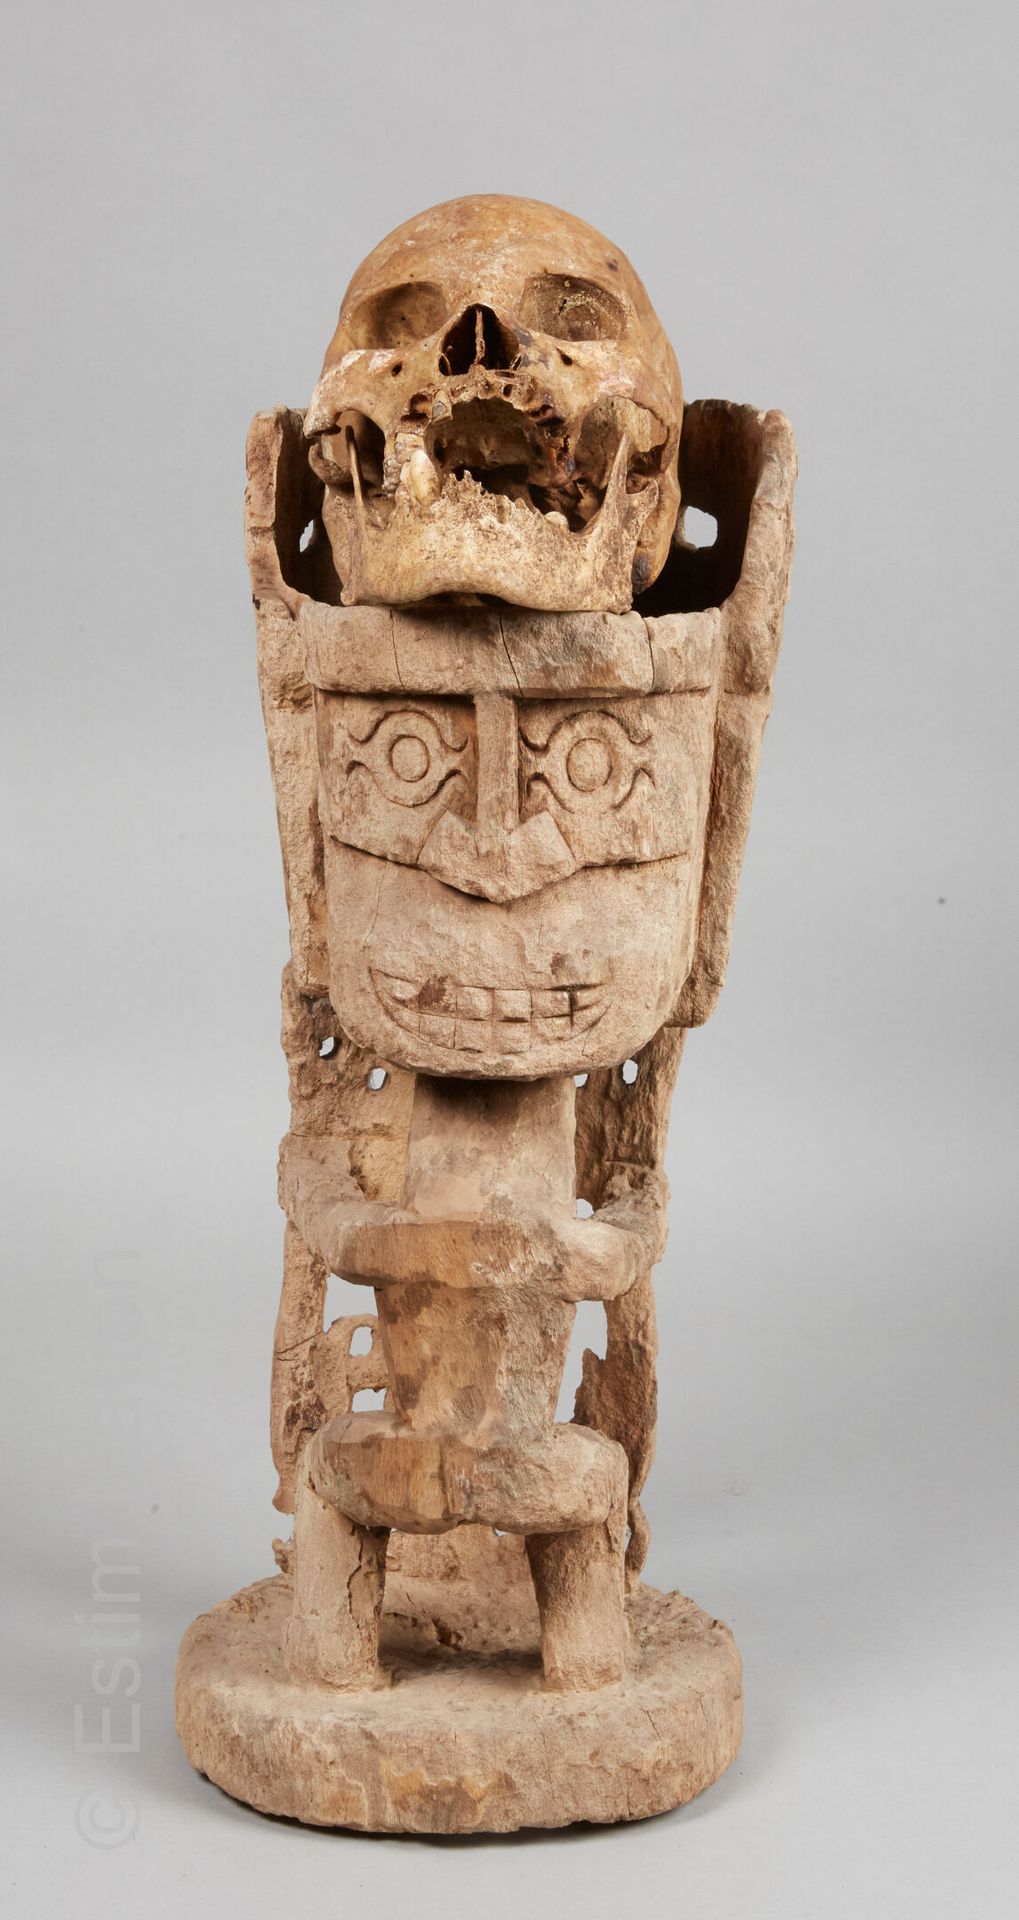 ASMAT - IRIAN JAYA 阿斯玛特-伊里安-贾亚



木雕科尔瓦，描绘了一个站立的战士，头戴仪式性的头饰，一边雕刻着骷髅头，另一边雕刻着风格化的笑&hellip;